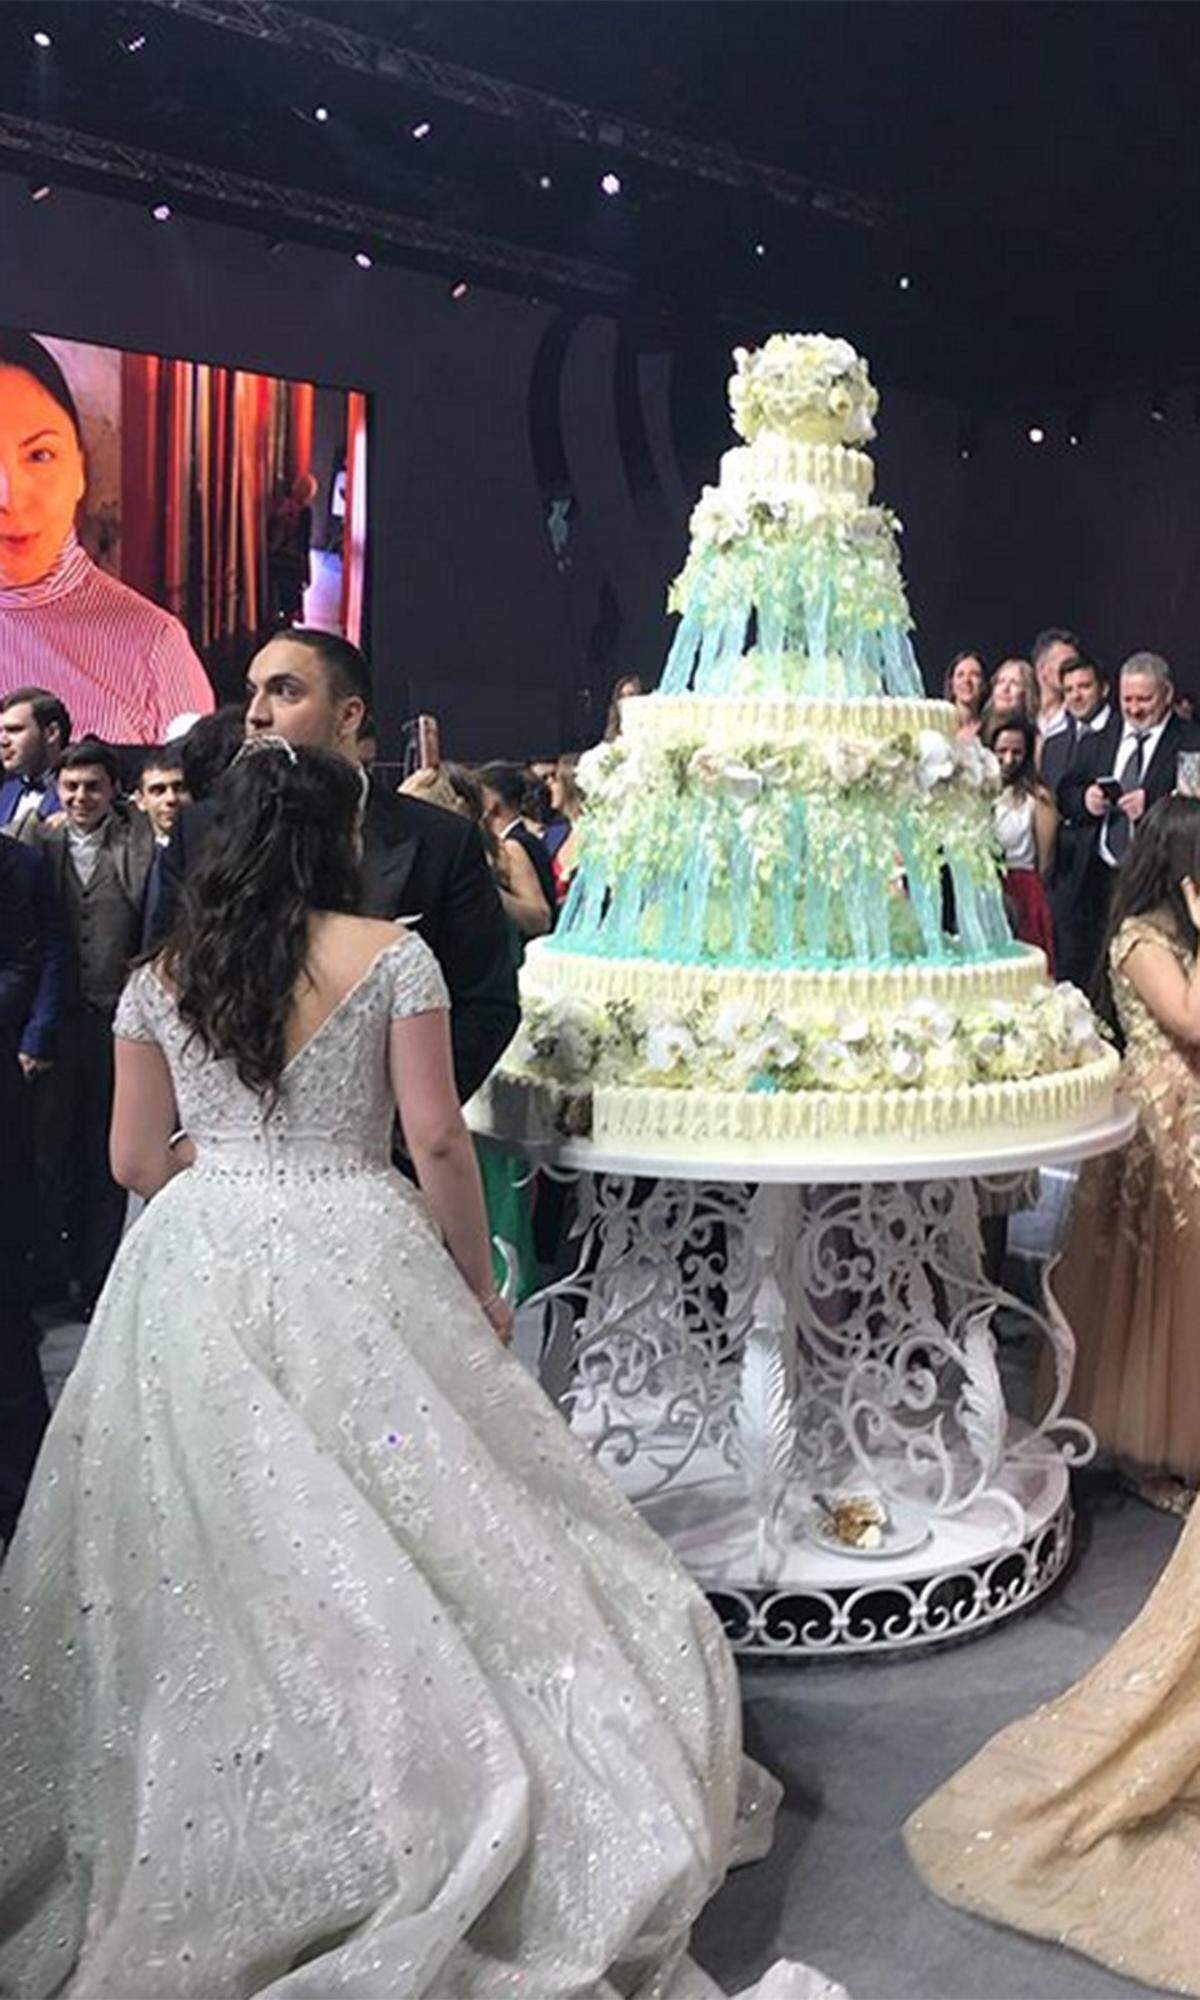 Da hat sich wohl jemand von Disneys „Die Eiskönigin“ inspirieren lassen. Die mehrschichtige, aufwendig verzierte Hochzeitstorte sah so aus, als wäre sie von Eiskristallen gestützt.